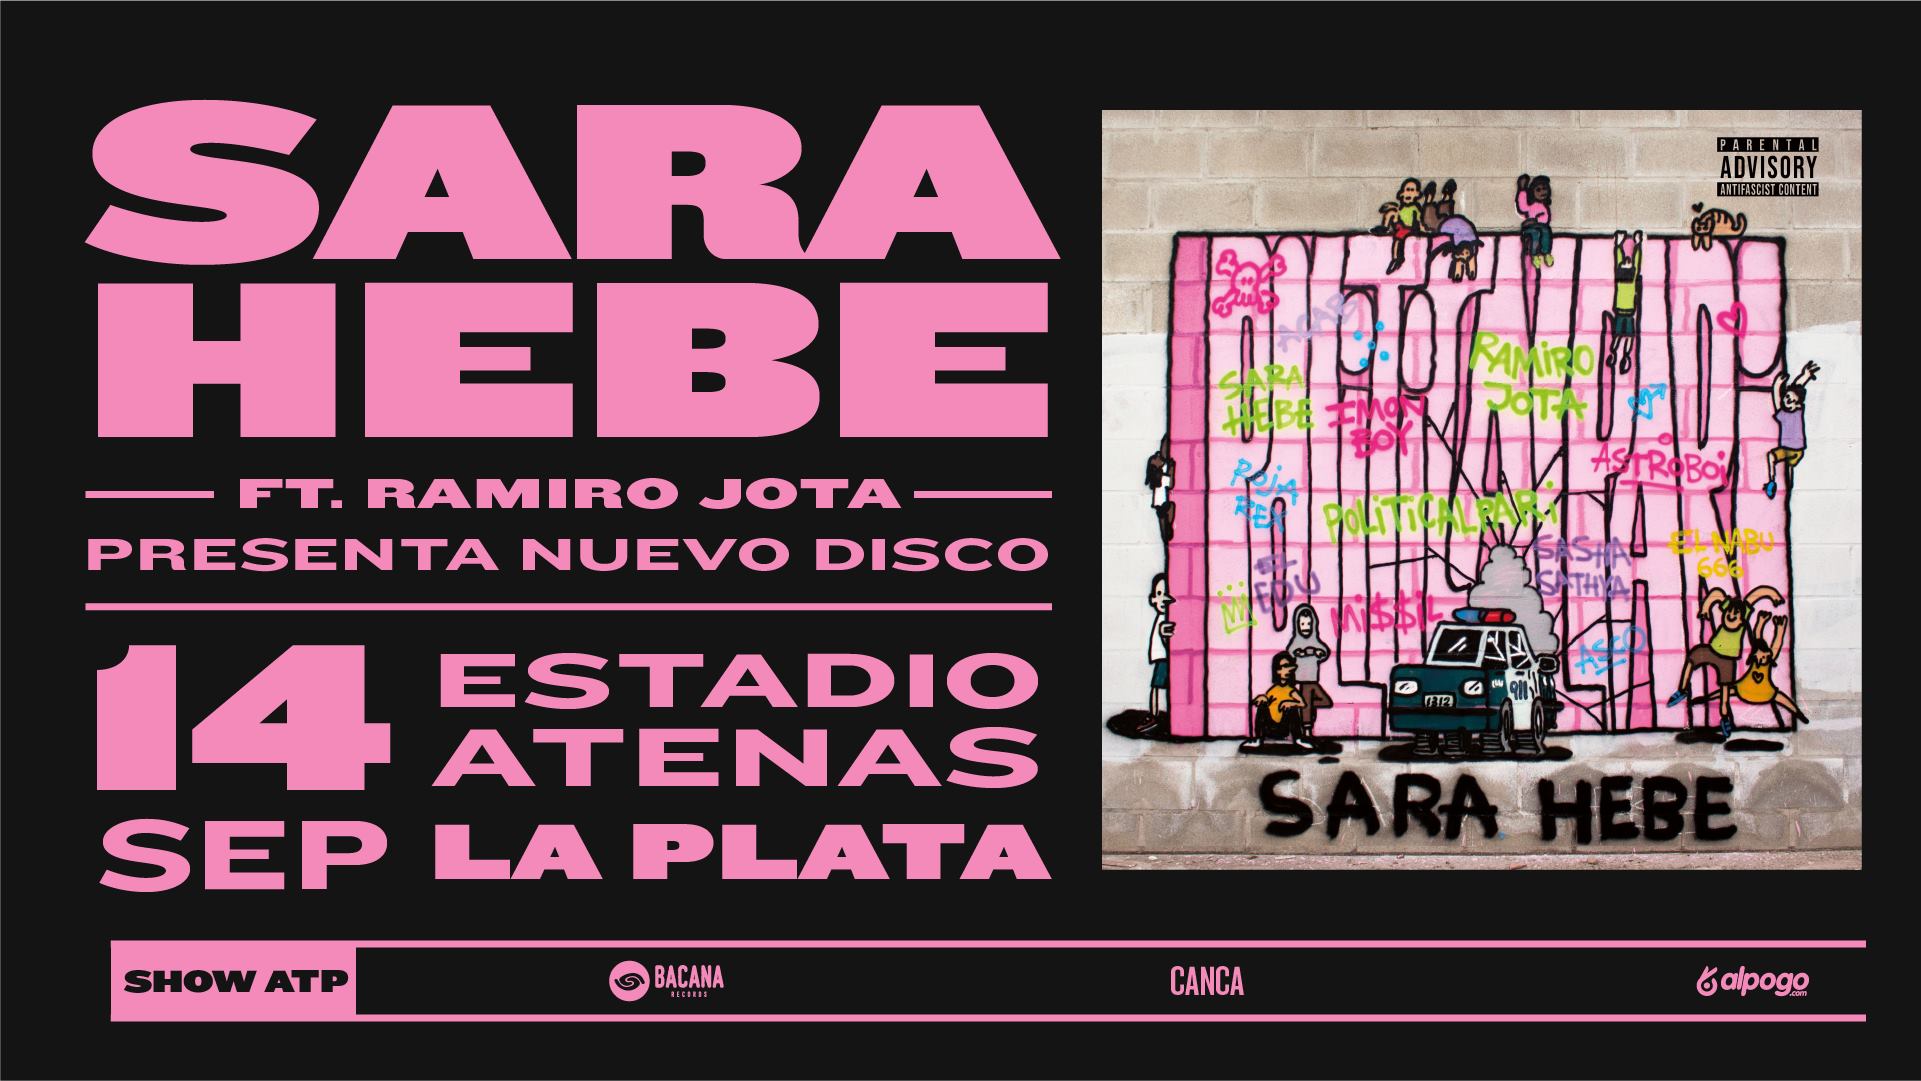 VALIRA en concierto en Madrid · Fin de Gira Supernova, 21 de octubre -  Próximo Single